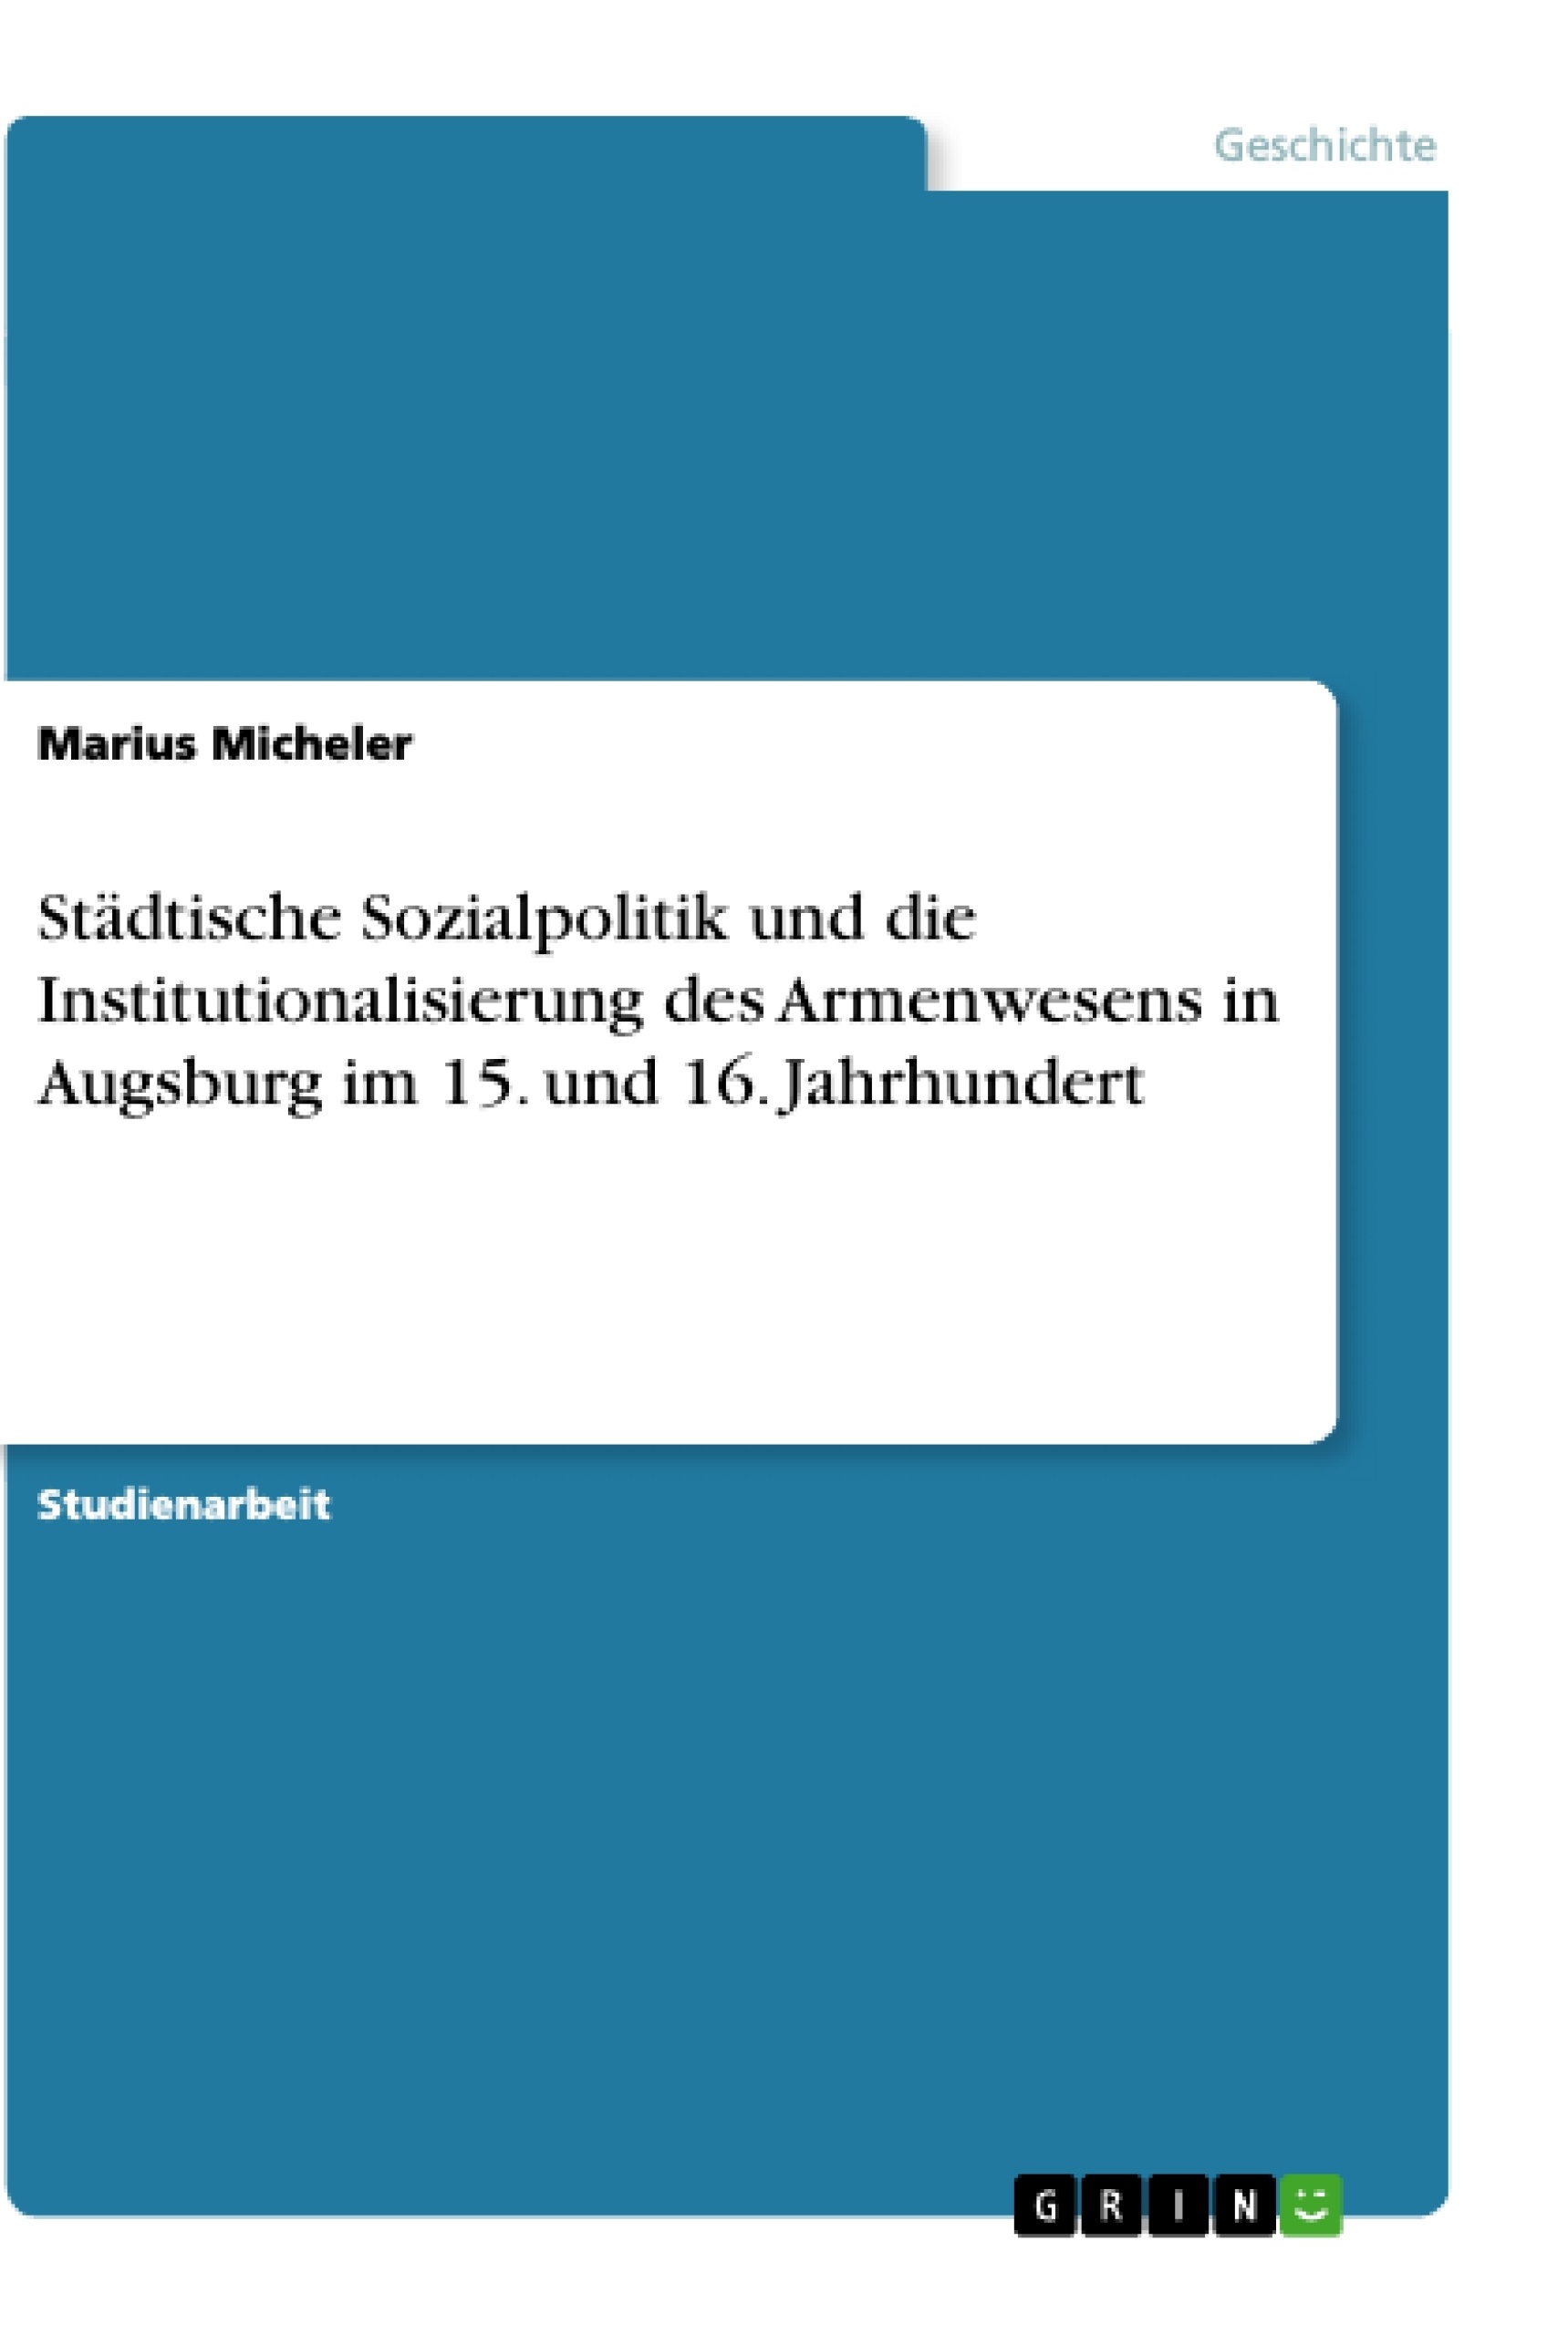 Title: Städtische Sozialpolitik und die Institutionalisierung des Armenwesens in Augsburg im 15. und 16. Jahrhundert